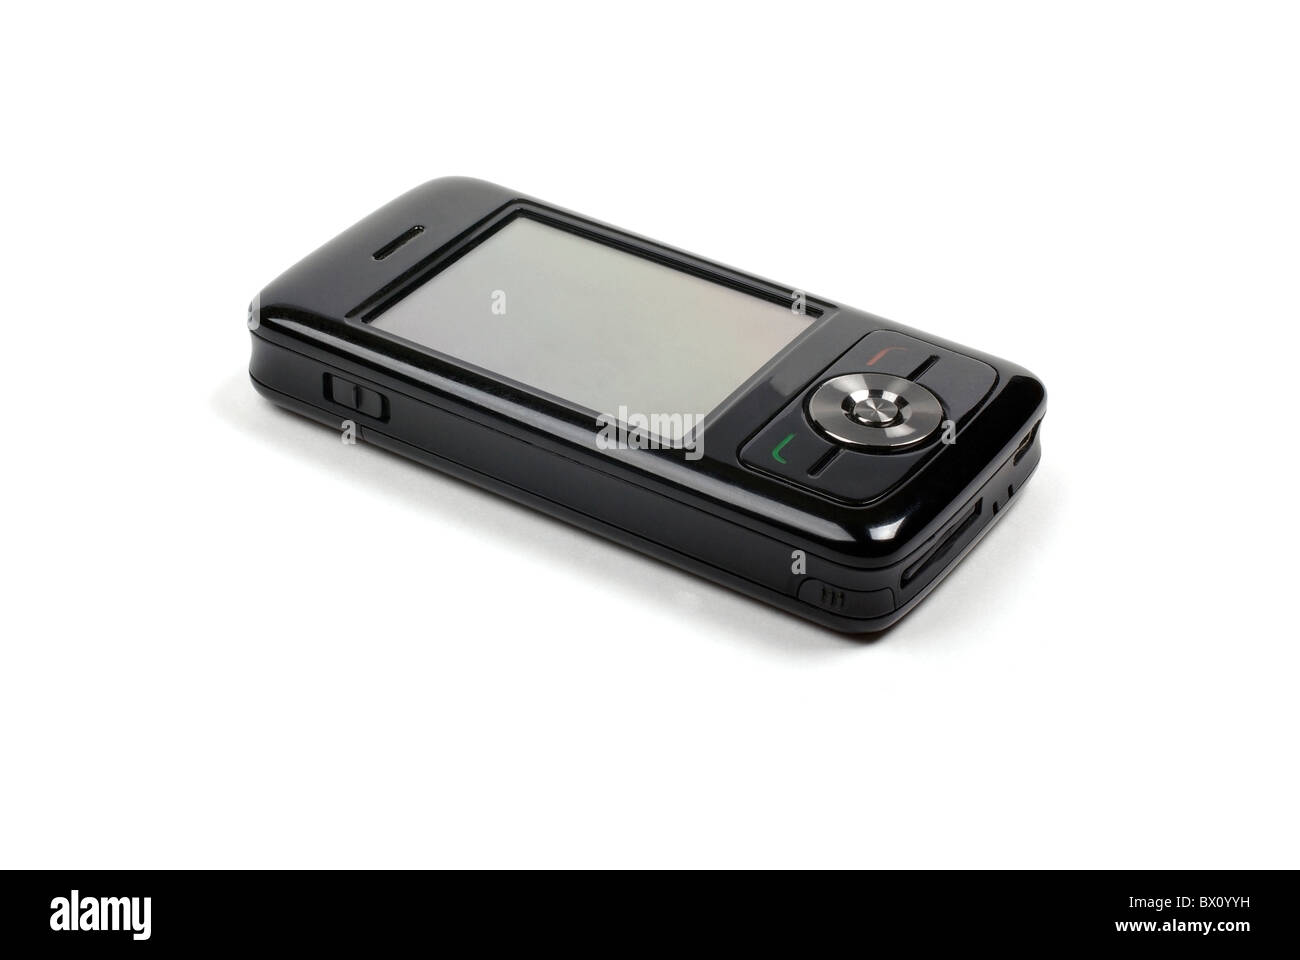 Stylish shiny black pda phone isolated on white background with shadow. Stock Photo